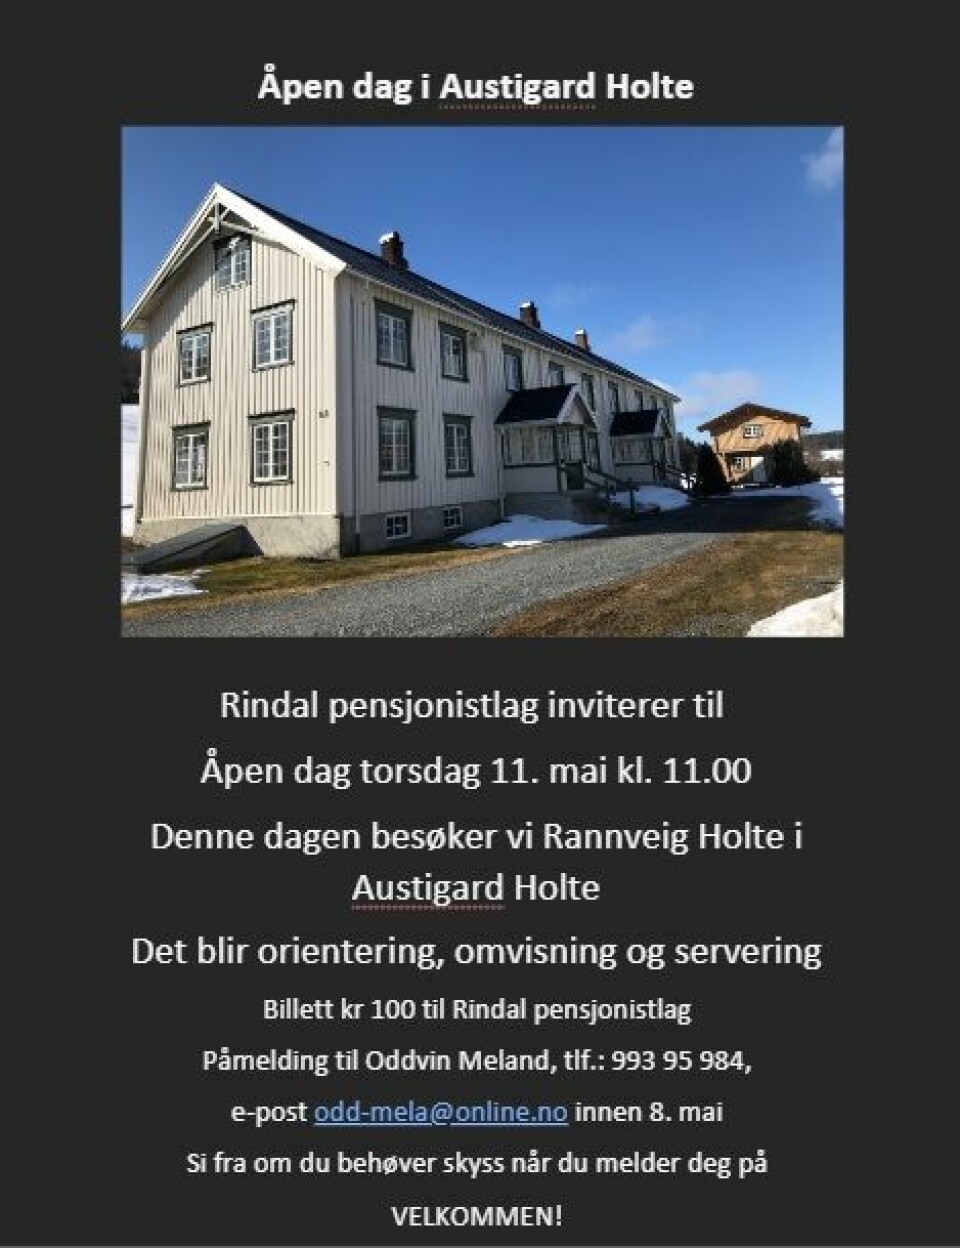 Plakat for åpen dag i Austigard Holte med bilde av et hvitt hus